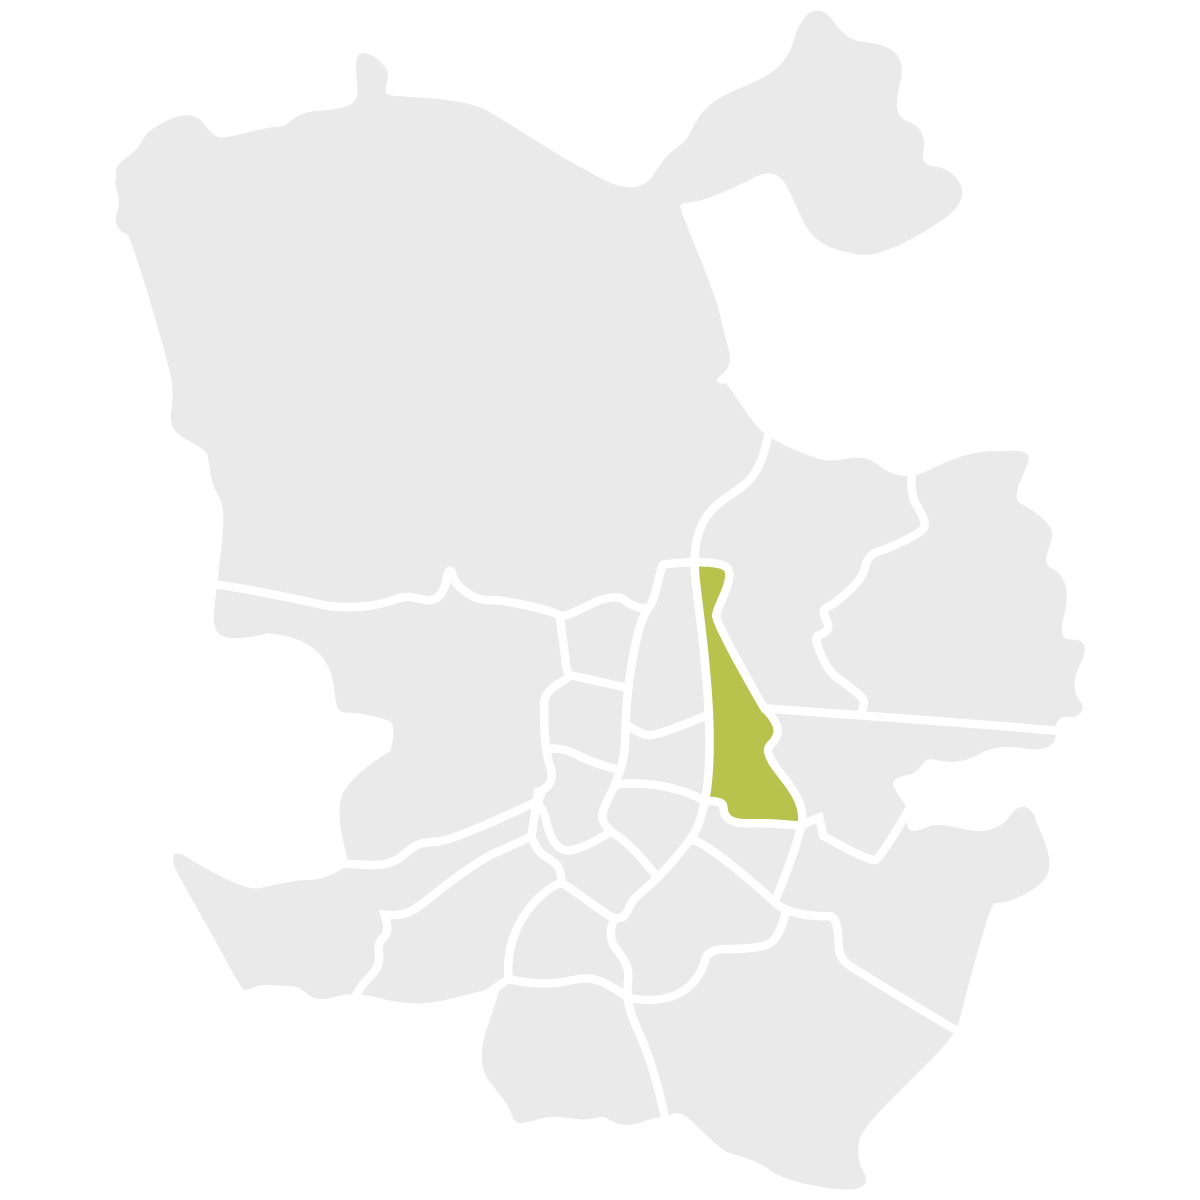 Ciudad Lineal